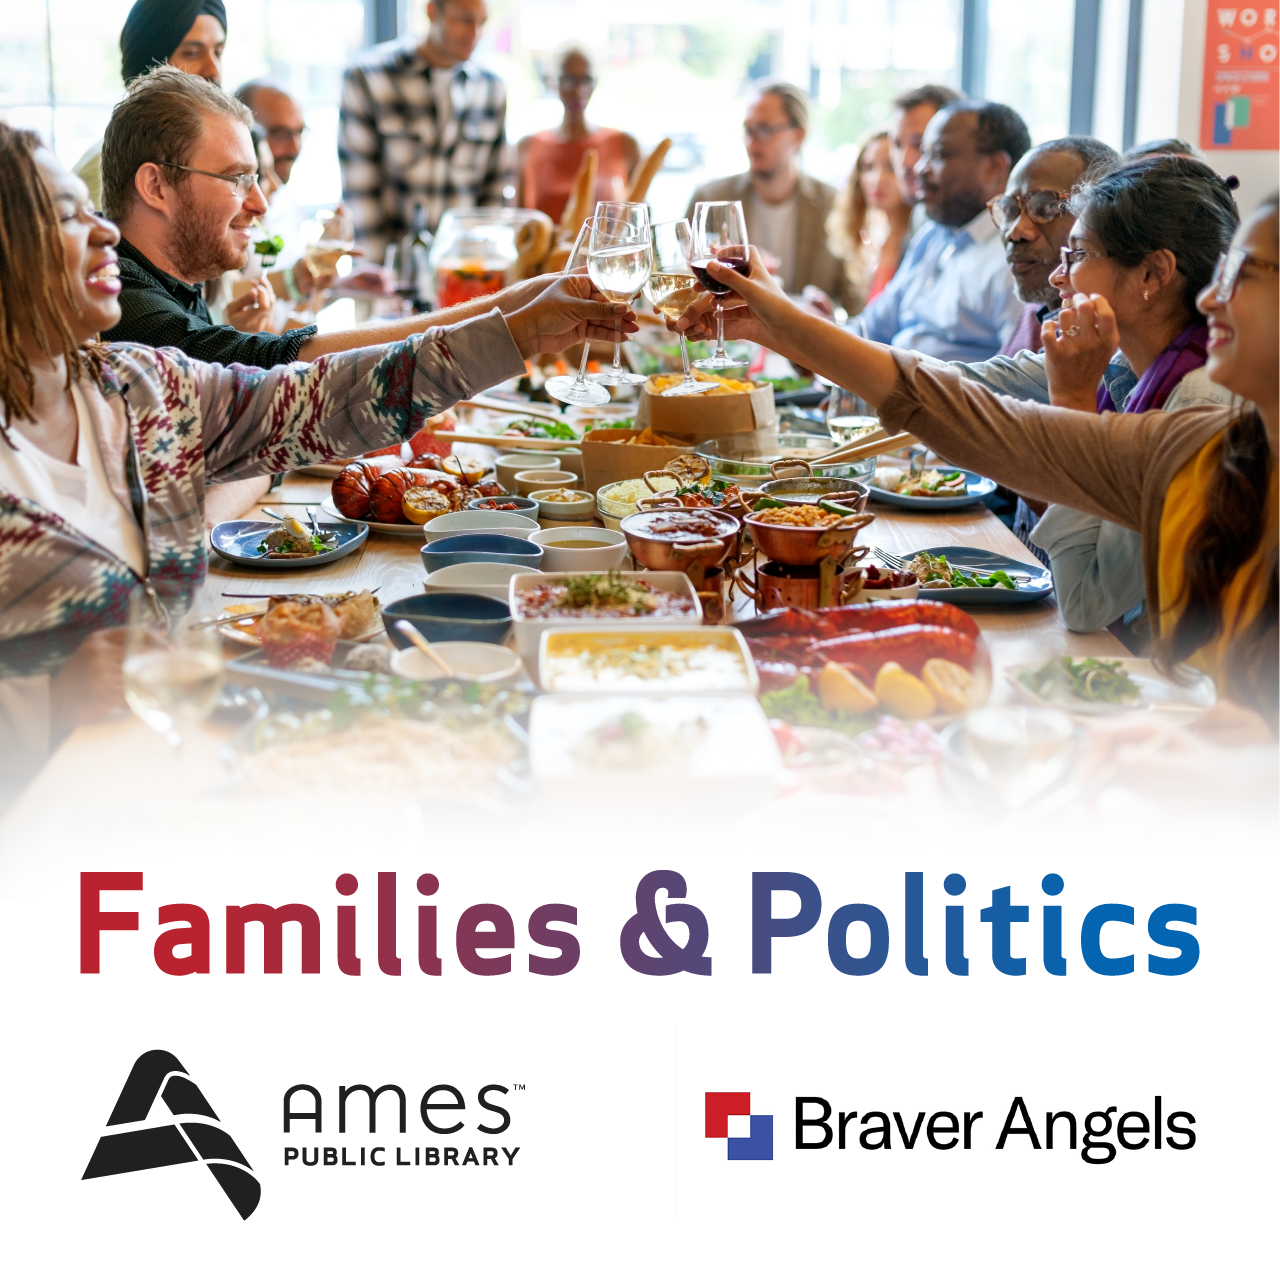 Families & Politics